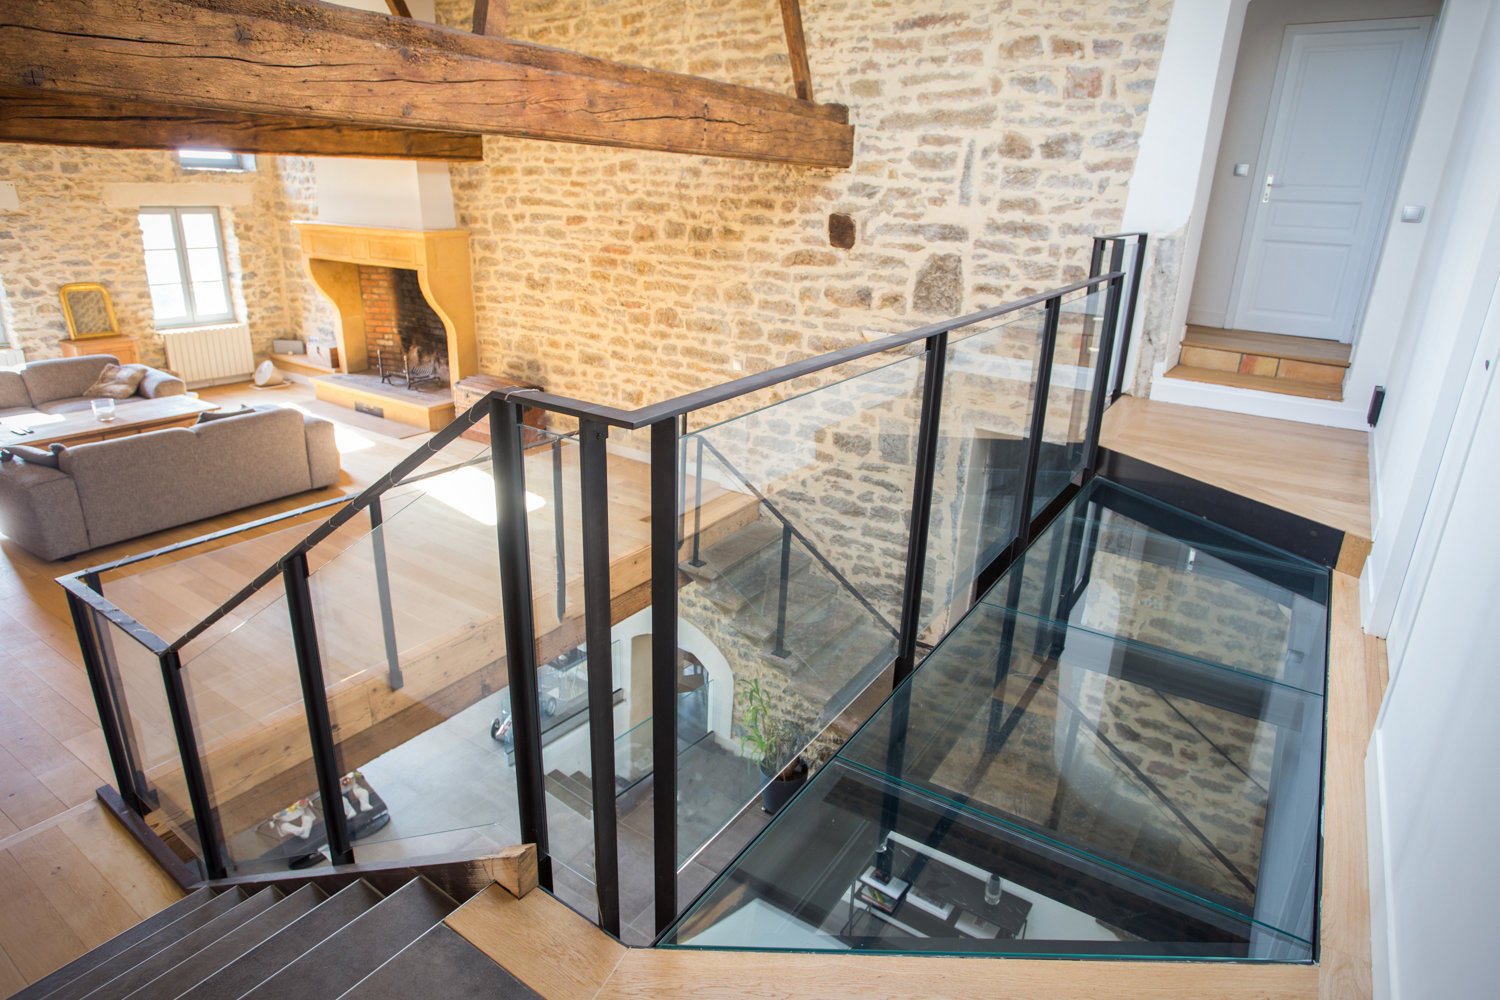 Un escalier en verre dans une maison aux murs en pierre.